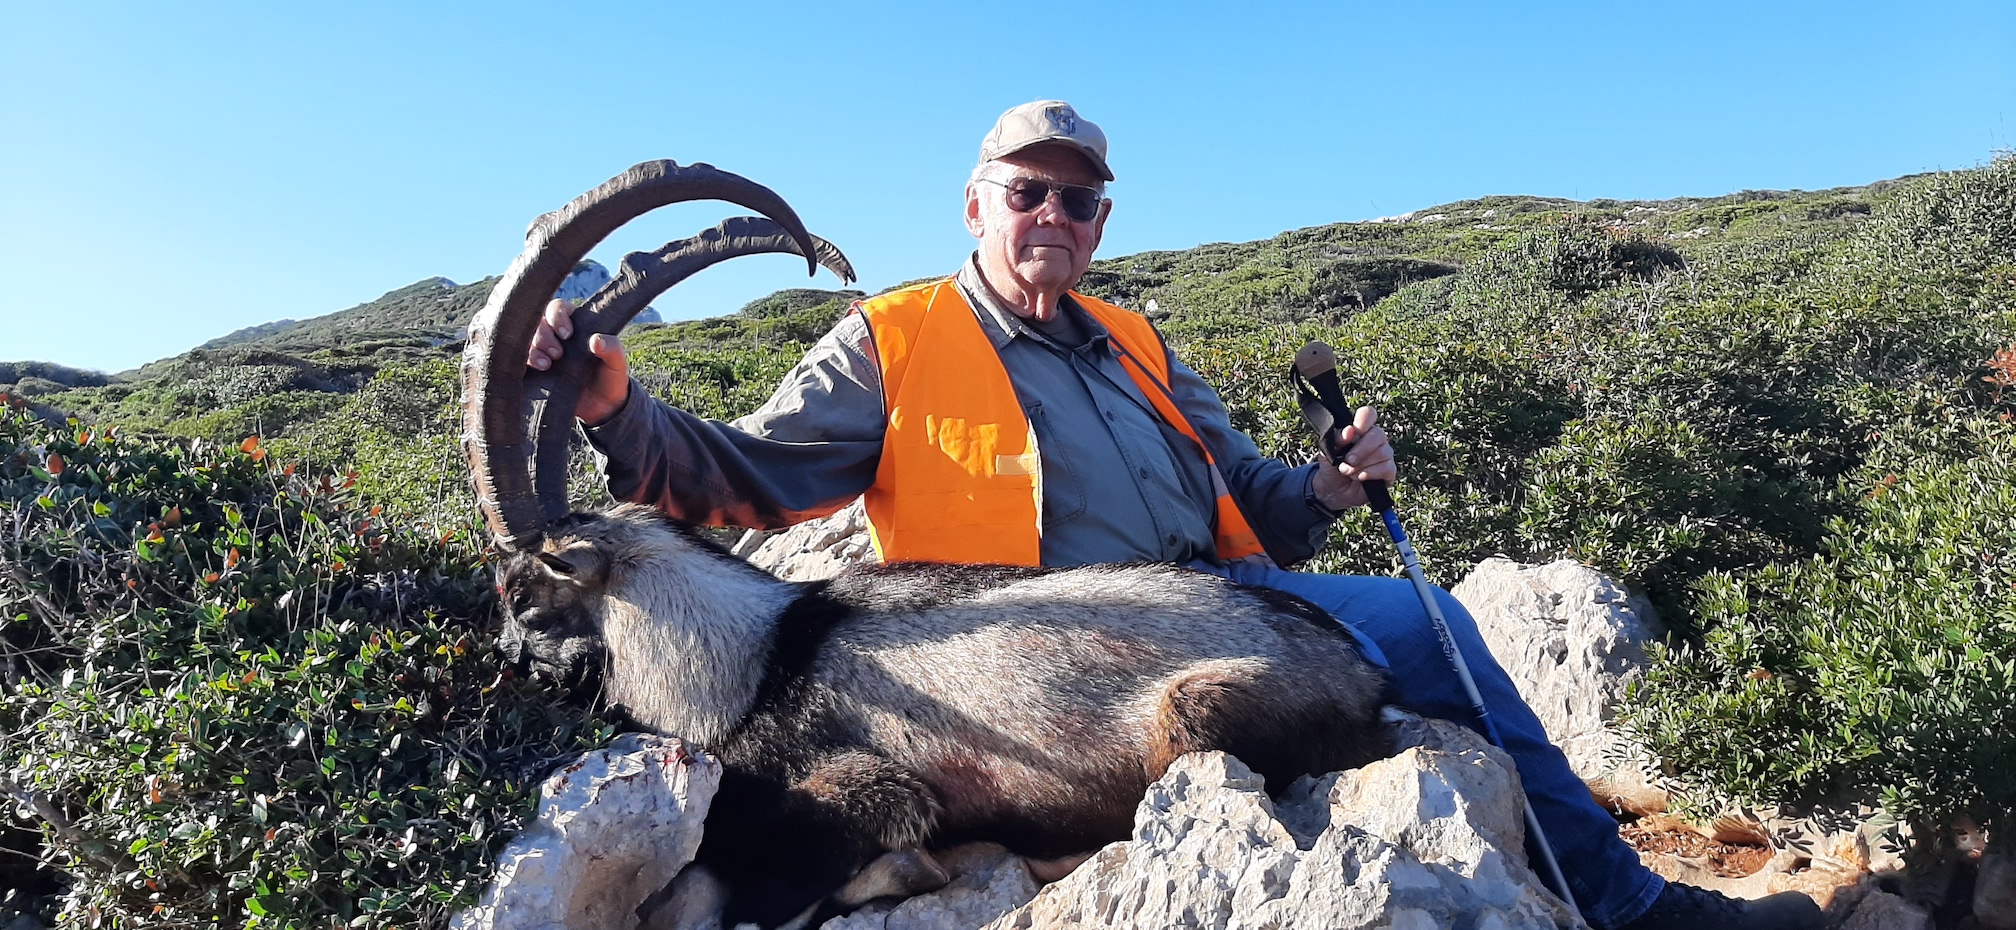 Bob-Keagy-Kri-Kri-Ibex-Greek-Mtn-Hunting